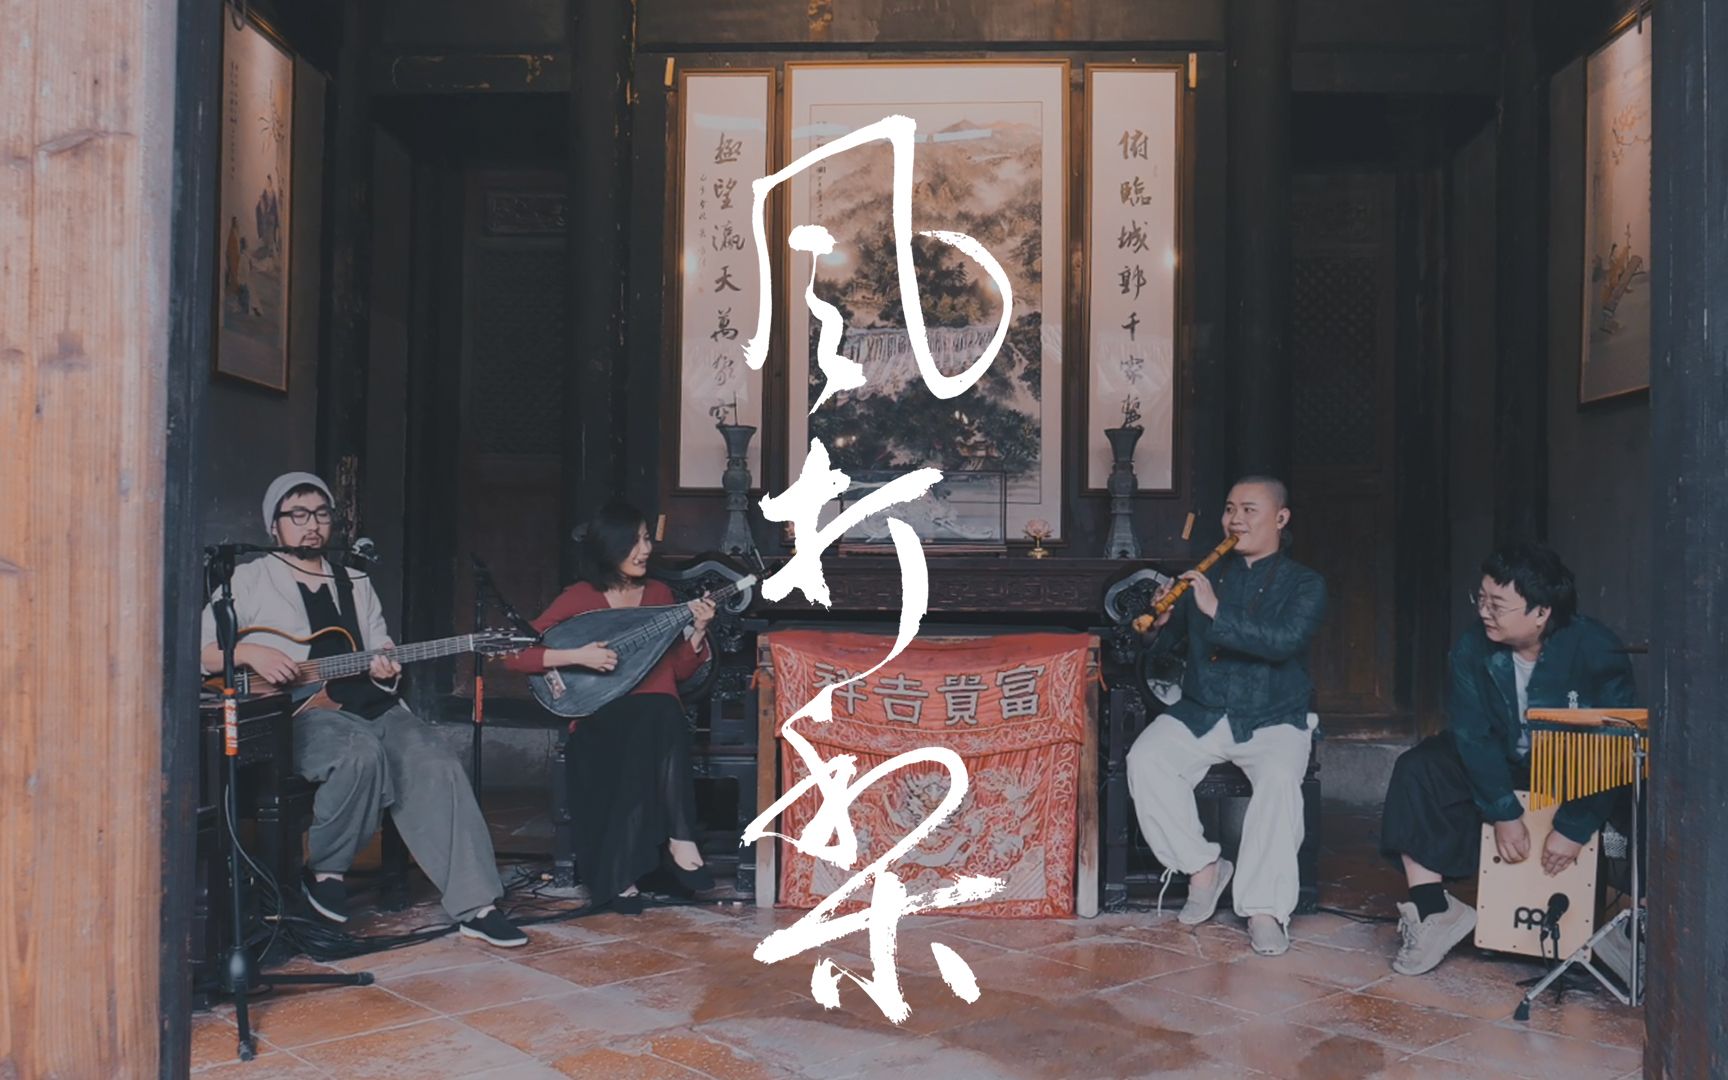 《风打梨》三分钟听非遗！洞箫一响，注入灵魂！泉州古厝里穿越千年的中国音乐